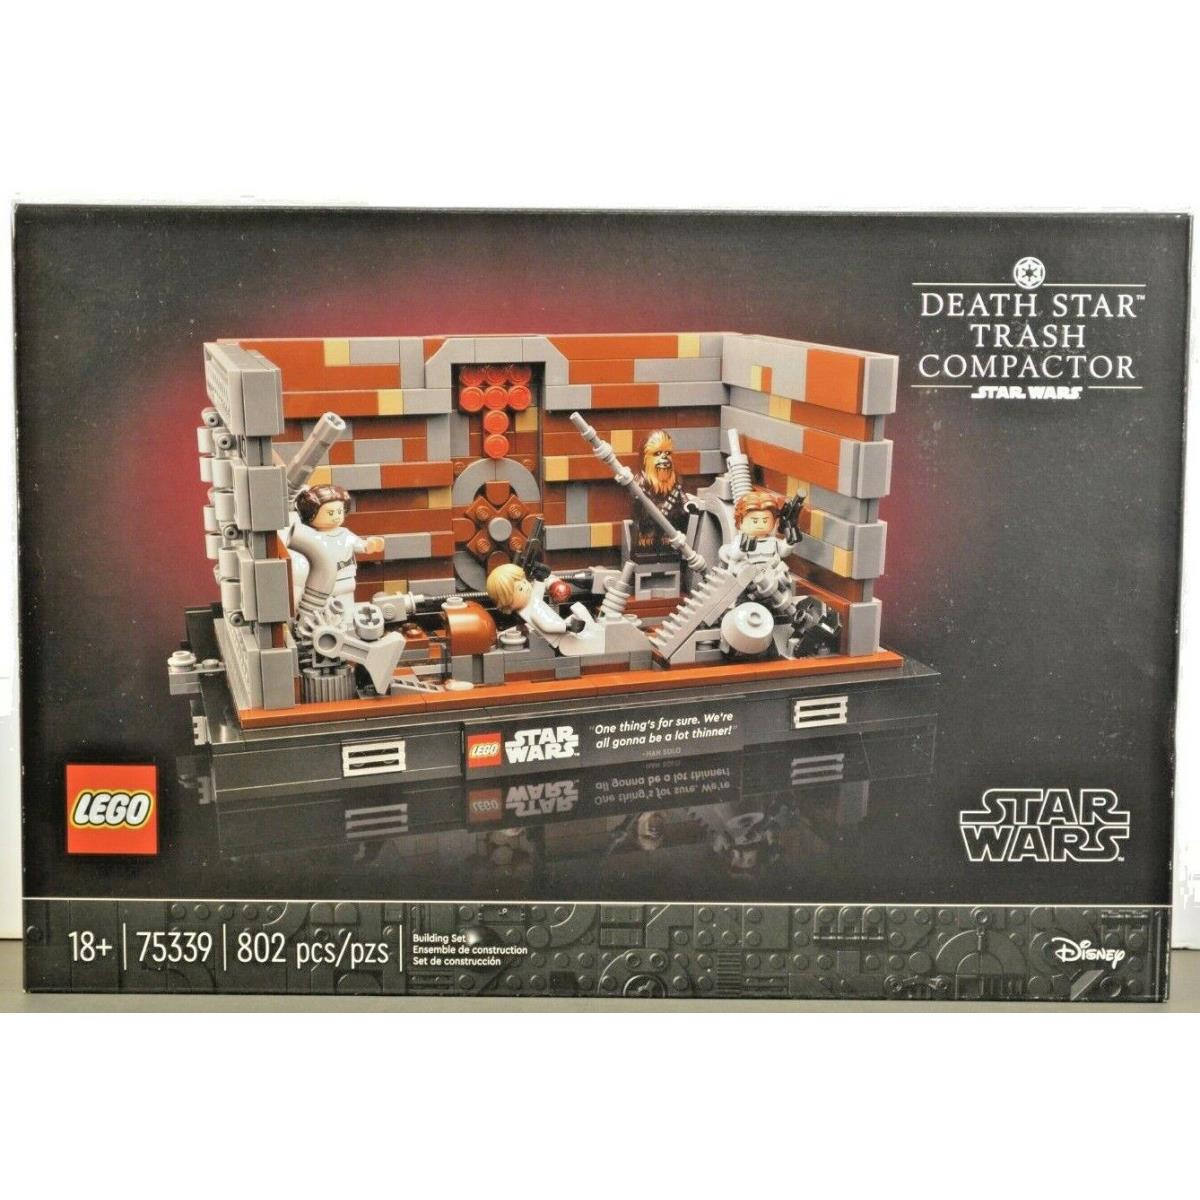 Lego Star Wars Death Star Trash Compactor 75339 Disney 802 Pcs RS2-2